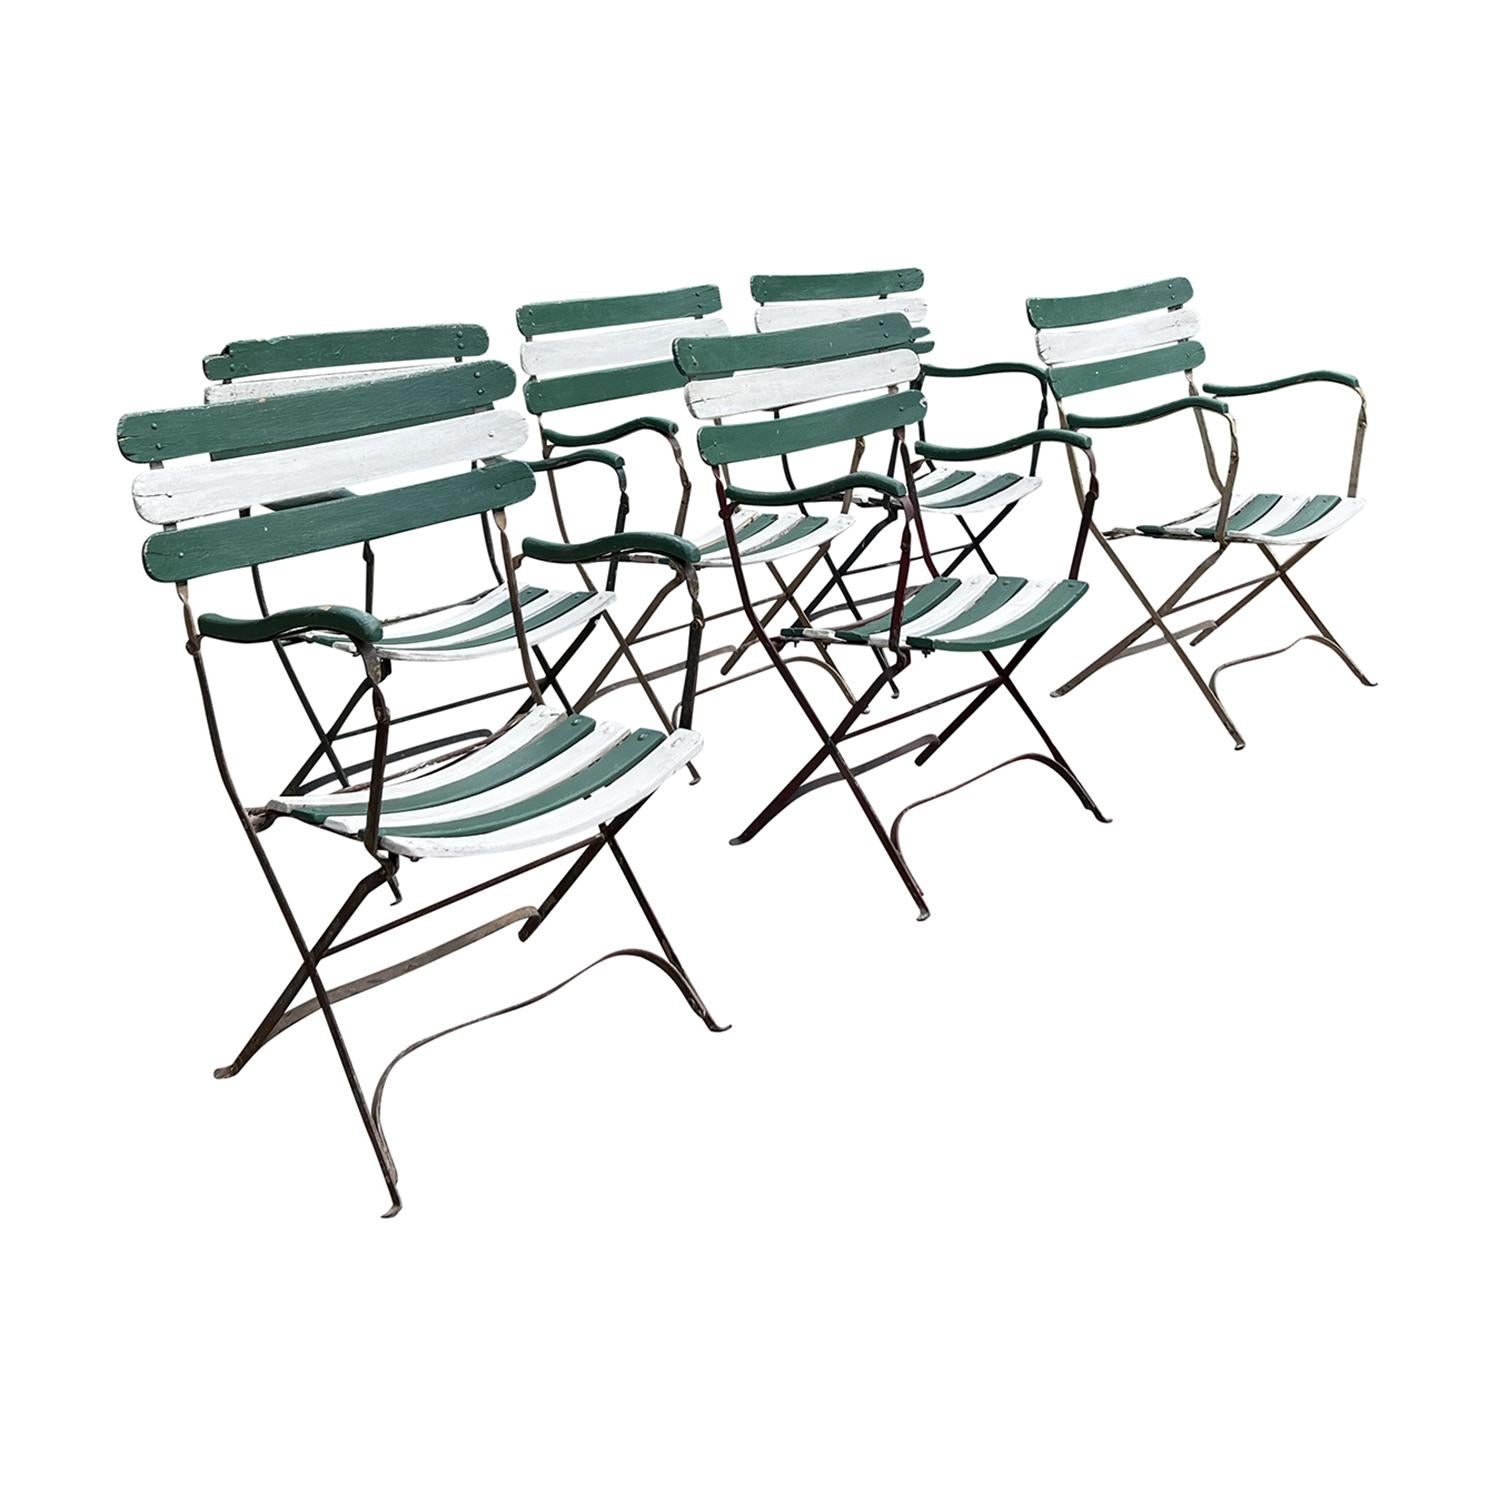 Ensemble de six fauteuils anciens en fer forgé et lattes de bois de style Bois de Boi, en bon état. Peint avec un motif alterné de charmantes lattes de bois vertes et blanches pour le dossier et l'assise, d'un style et d'une forme très confortables.